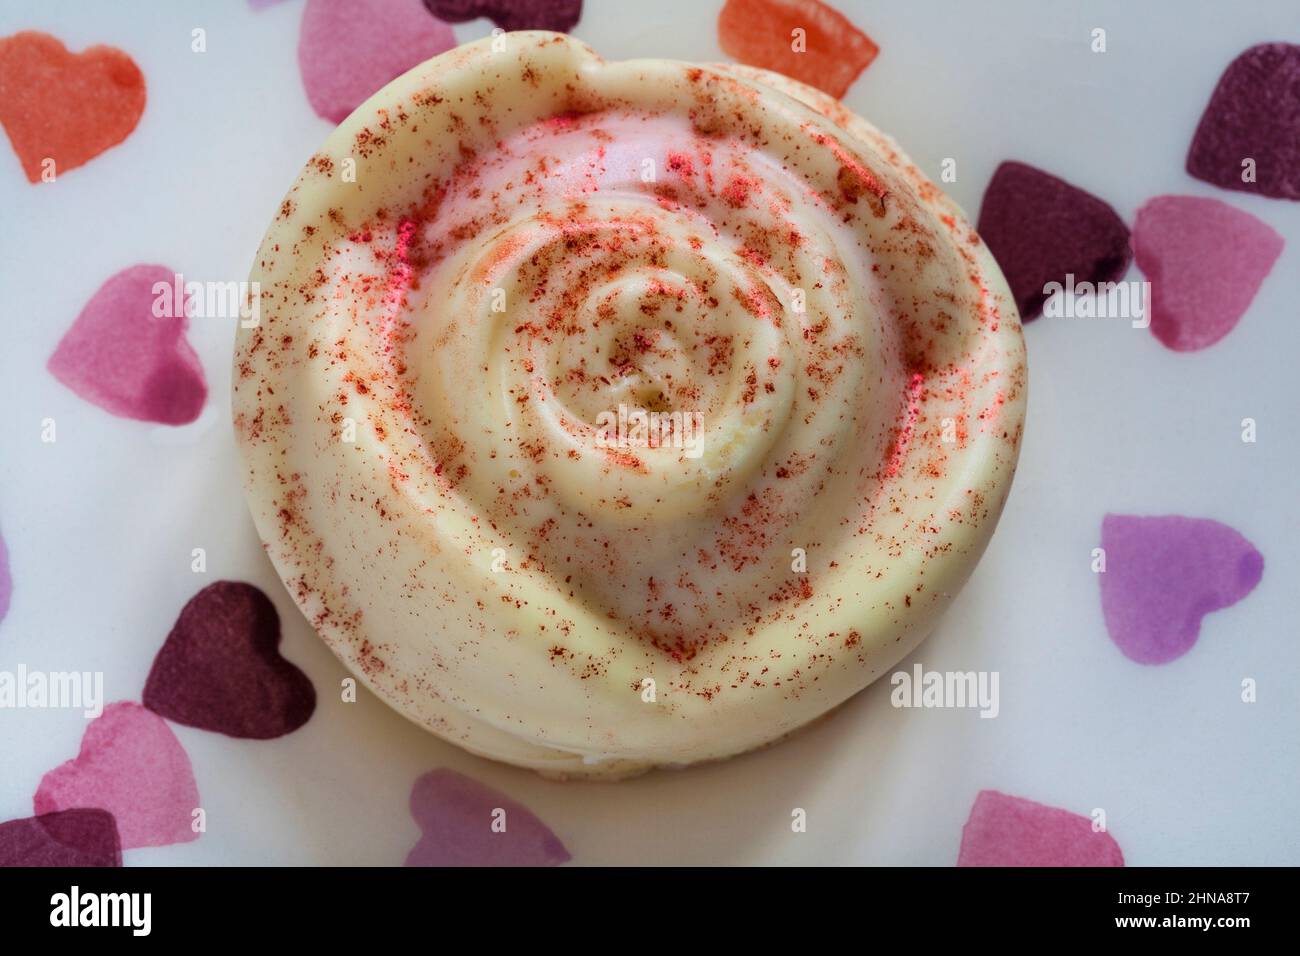 M&S mousse au chocolat blanc et aux roses des framboises dessert pour la Saint-Valentin sur une assiette avec coeurs Banque D'Images